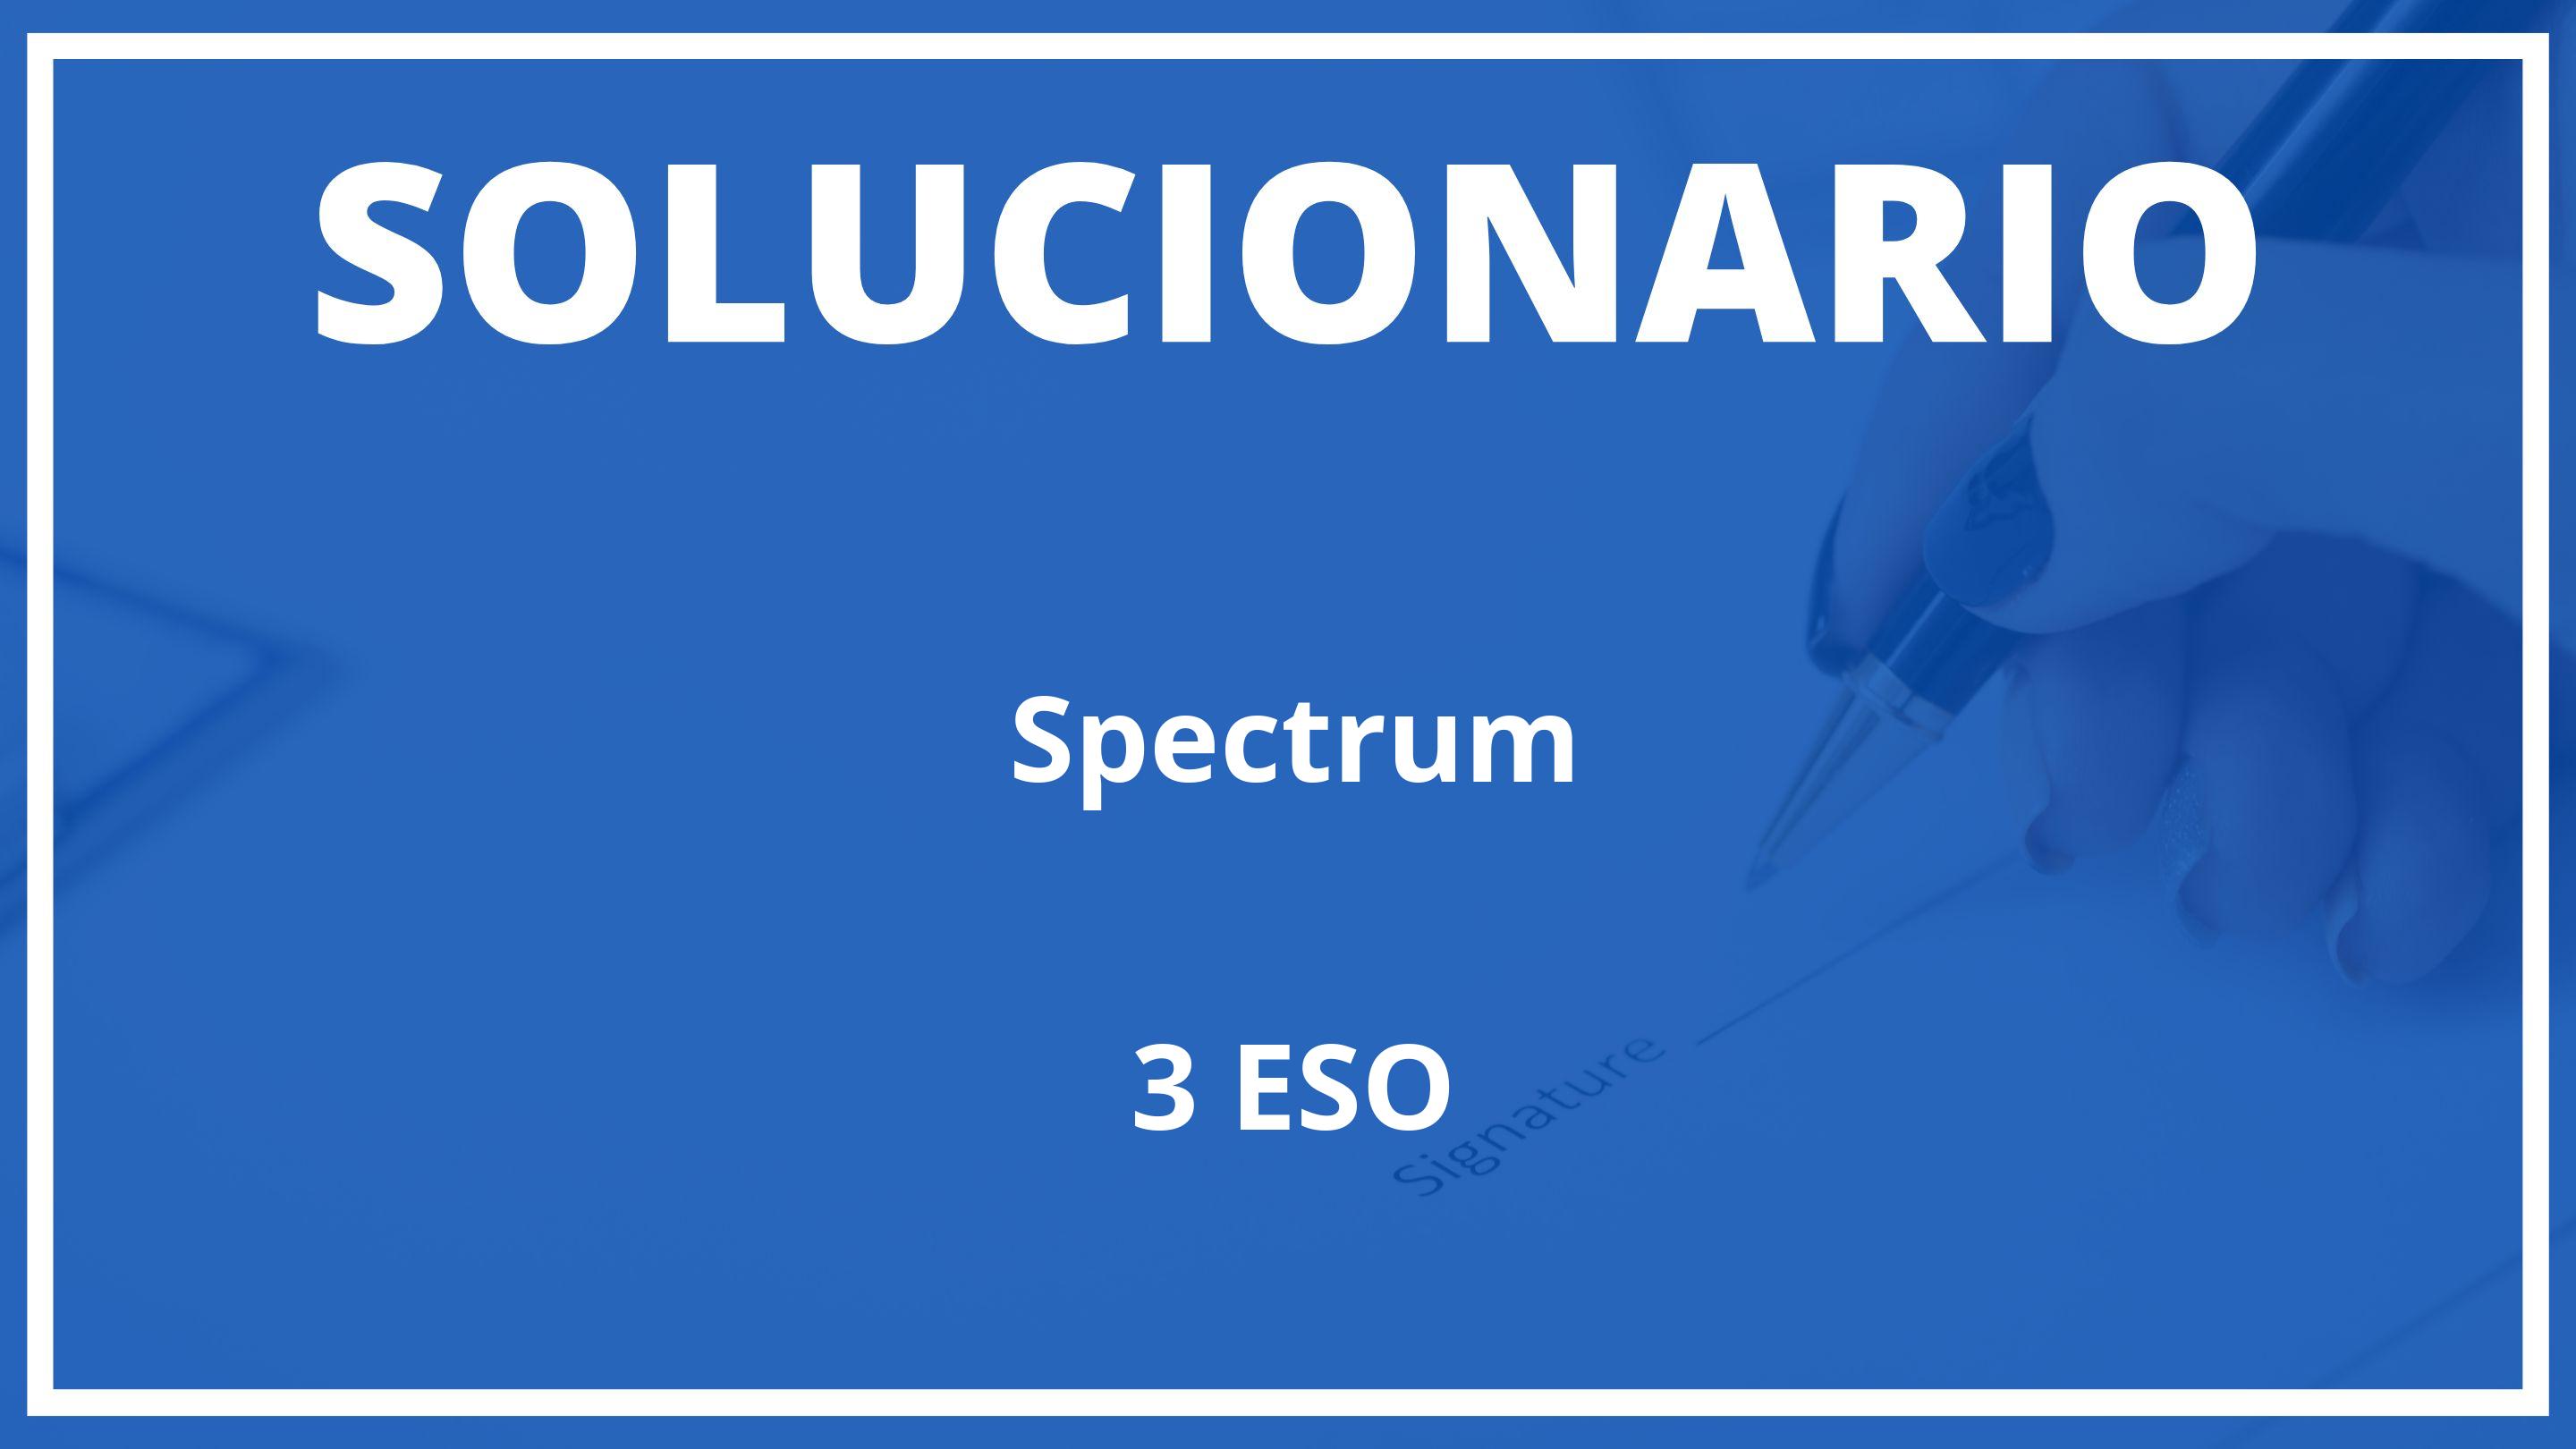 Solucionario Spectrum  Oxford 3 ESO